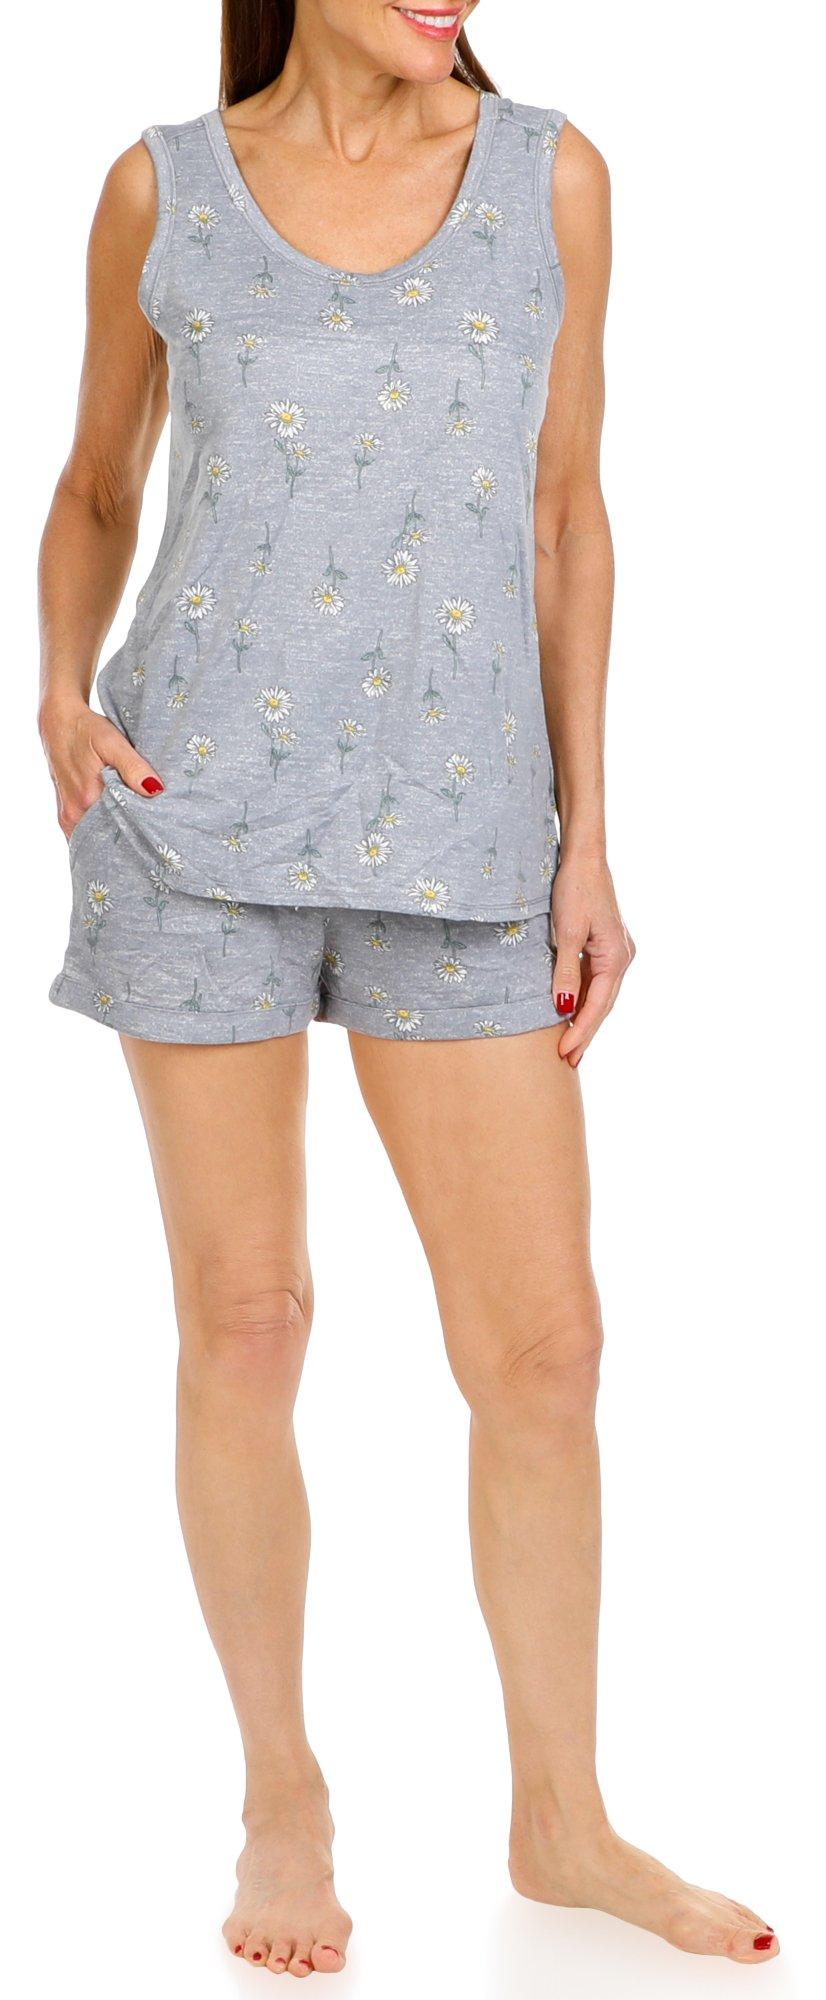 Women's 2 Pc Sleepwear Shorts Set